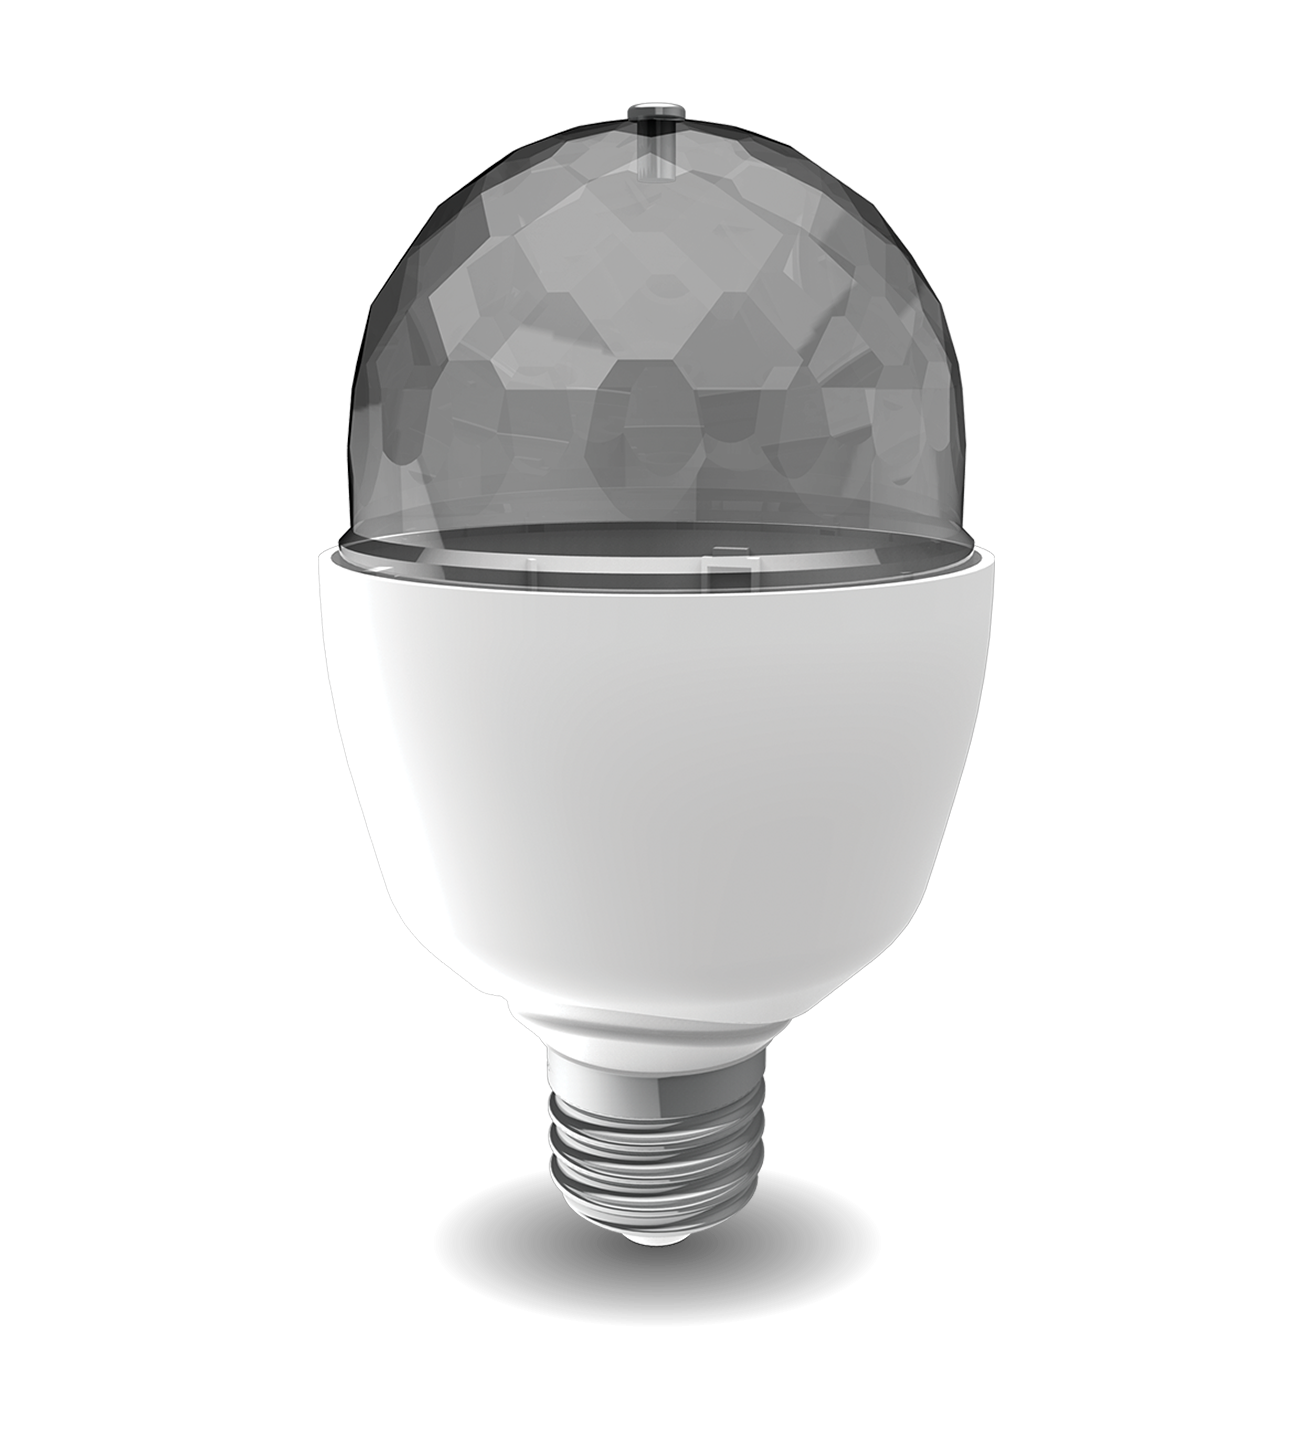 Ampoule LED A60, culot E27, 3,8W cons. (N.C eq.), Lumière noire